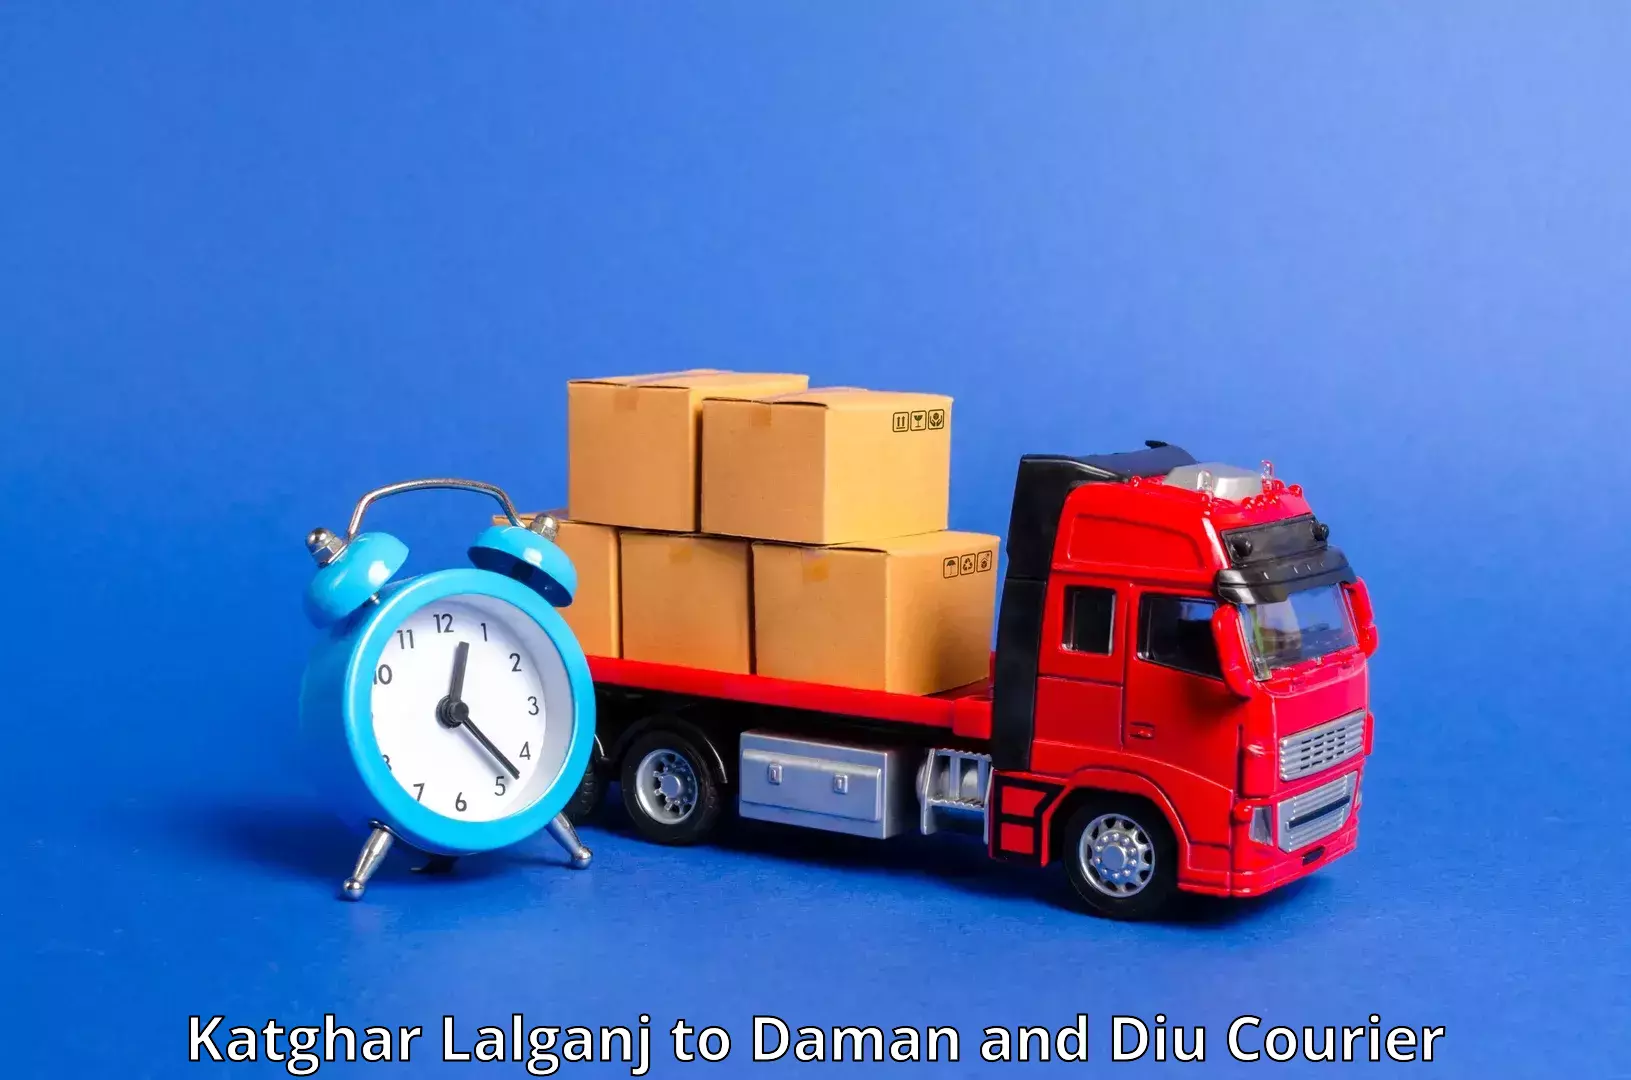 Nationwide shipping coverage Katghar Lalganj to Daman